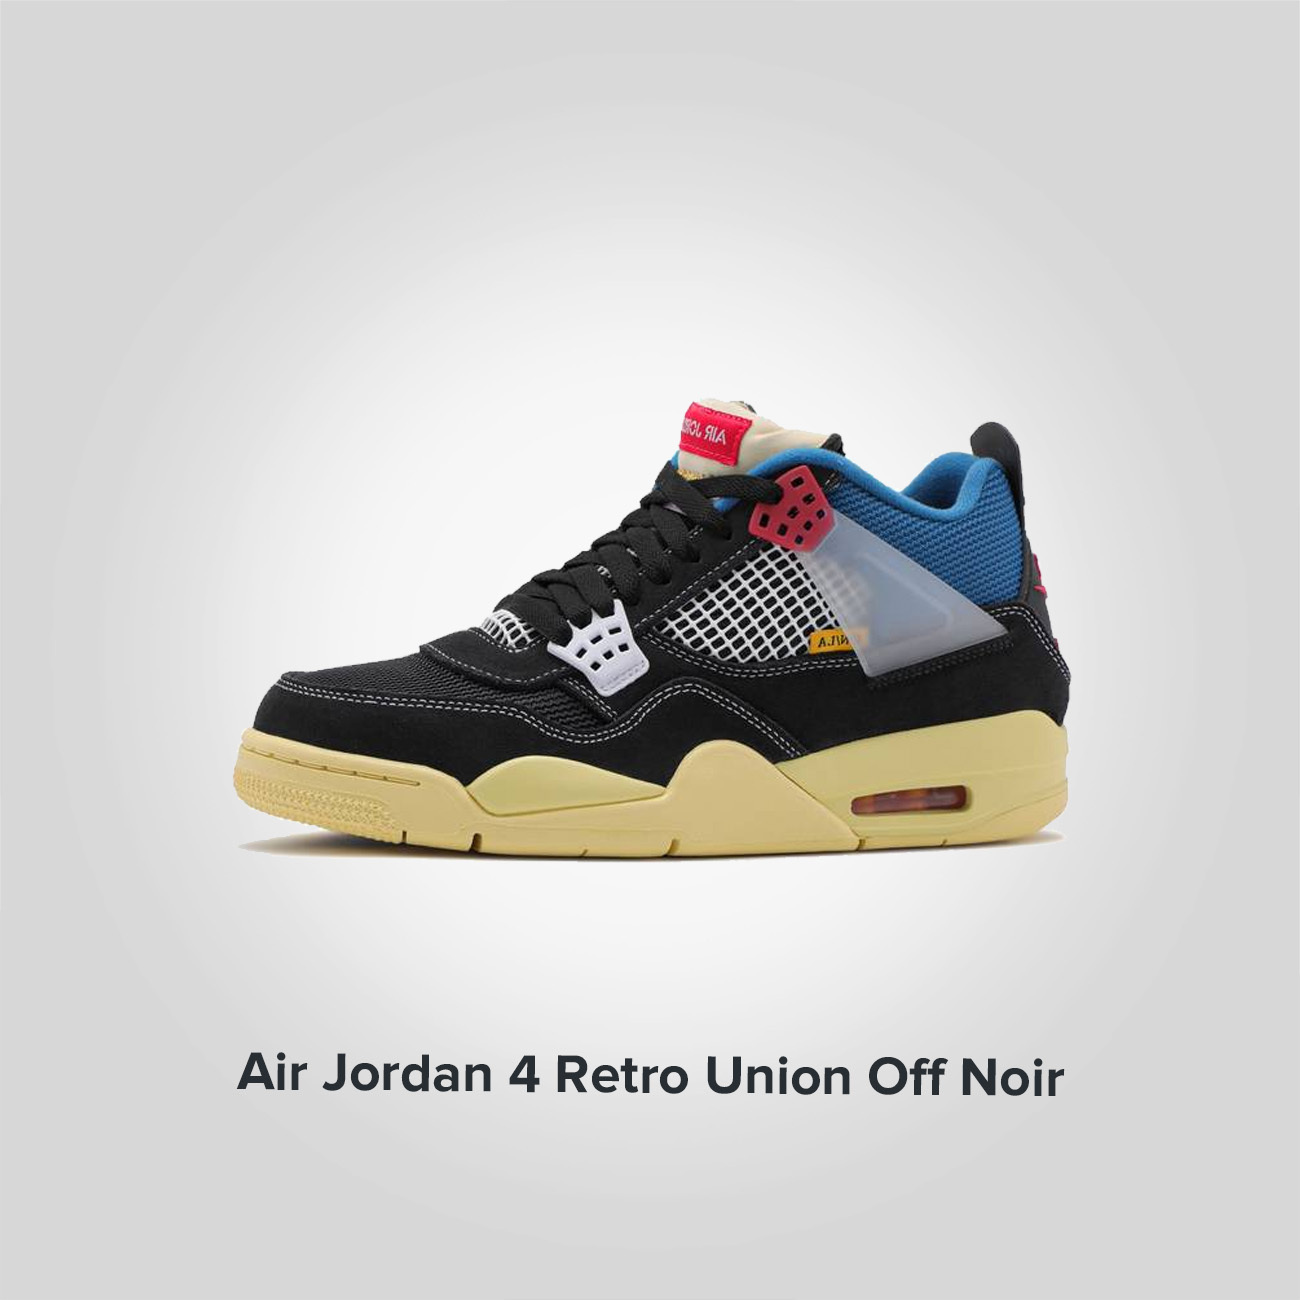 Jordan 4 Retro Union Off Noir